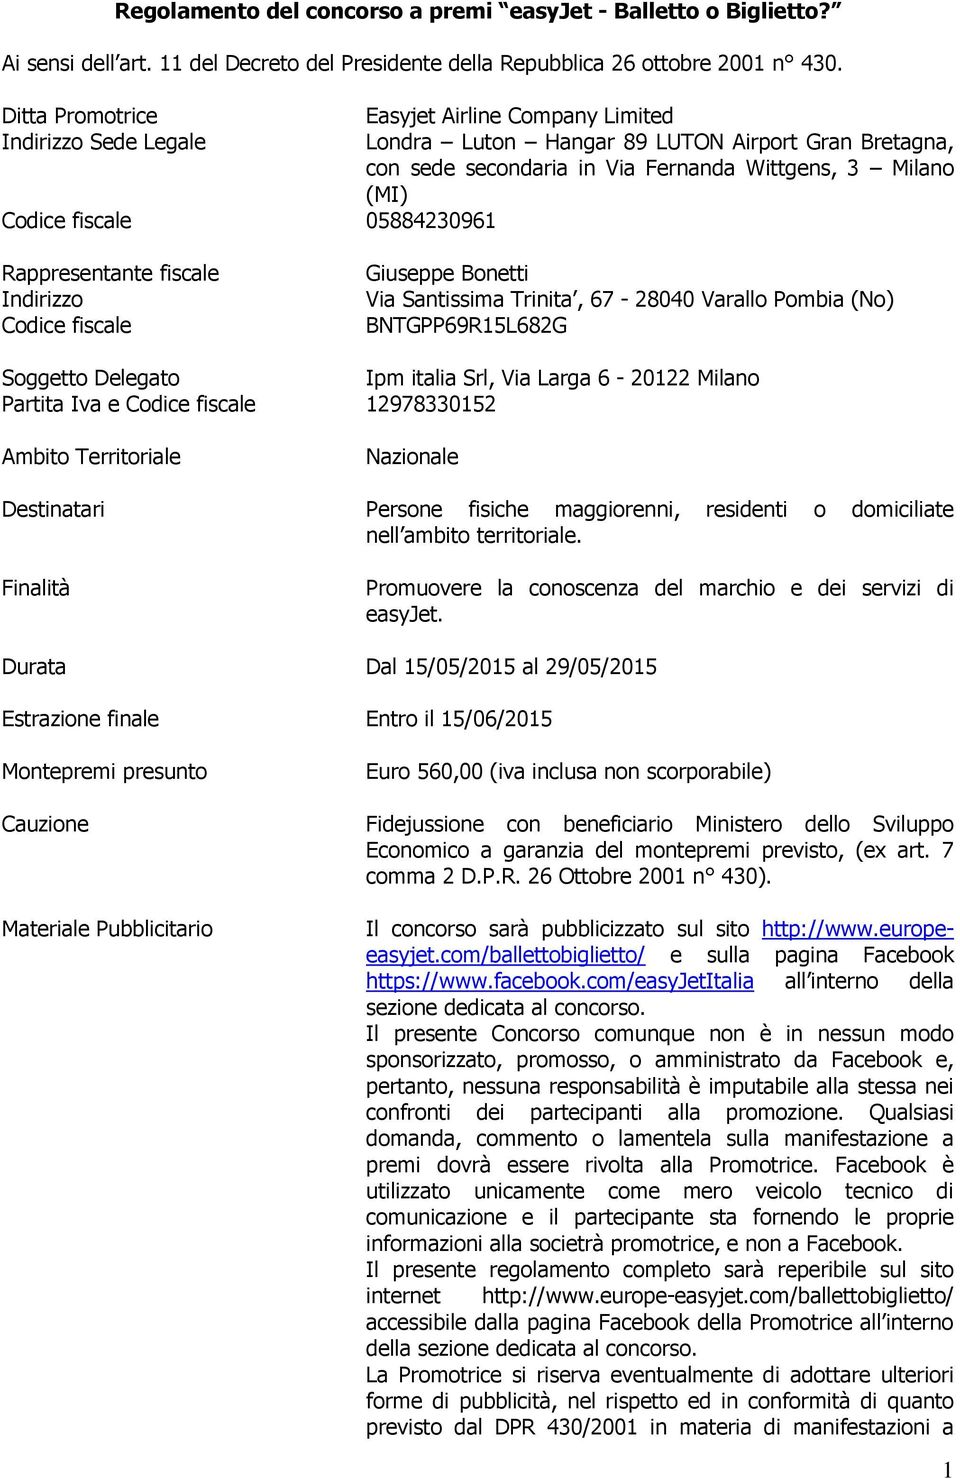 05884230961 Rappresentante fiscale Indirizzo Codice fiscale Giuseppe Bonetti Via Santissima Trinita, 67-28040 Varallo Pombia (No) BNTGPP69R15L682G Soggetto Delegato Ipm italia Srl, Via Larga 6-20122